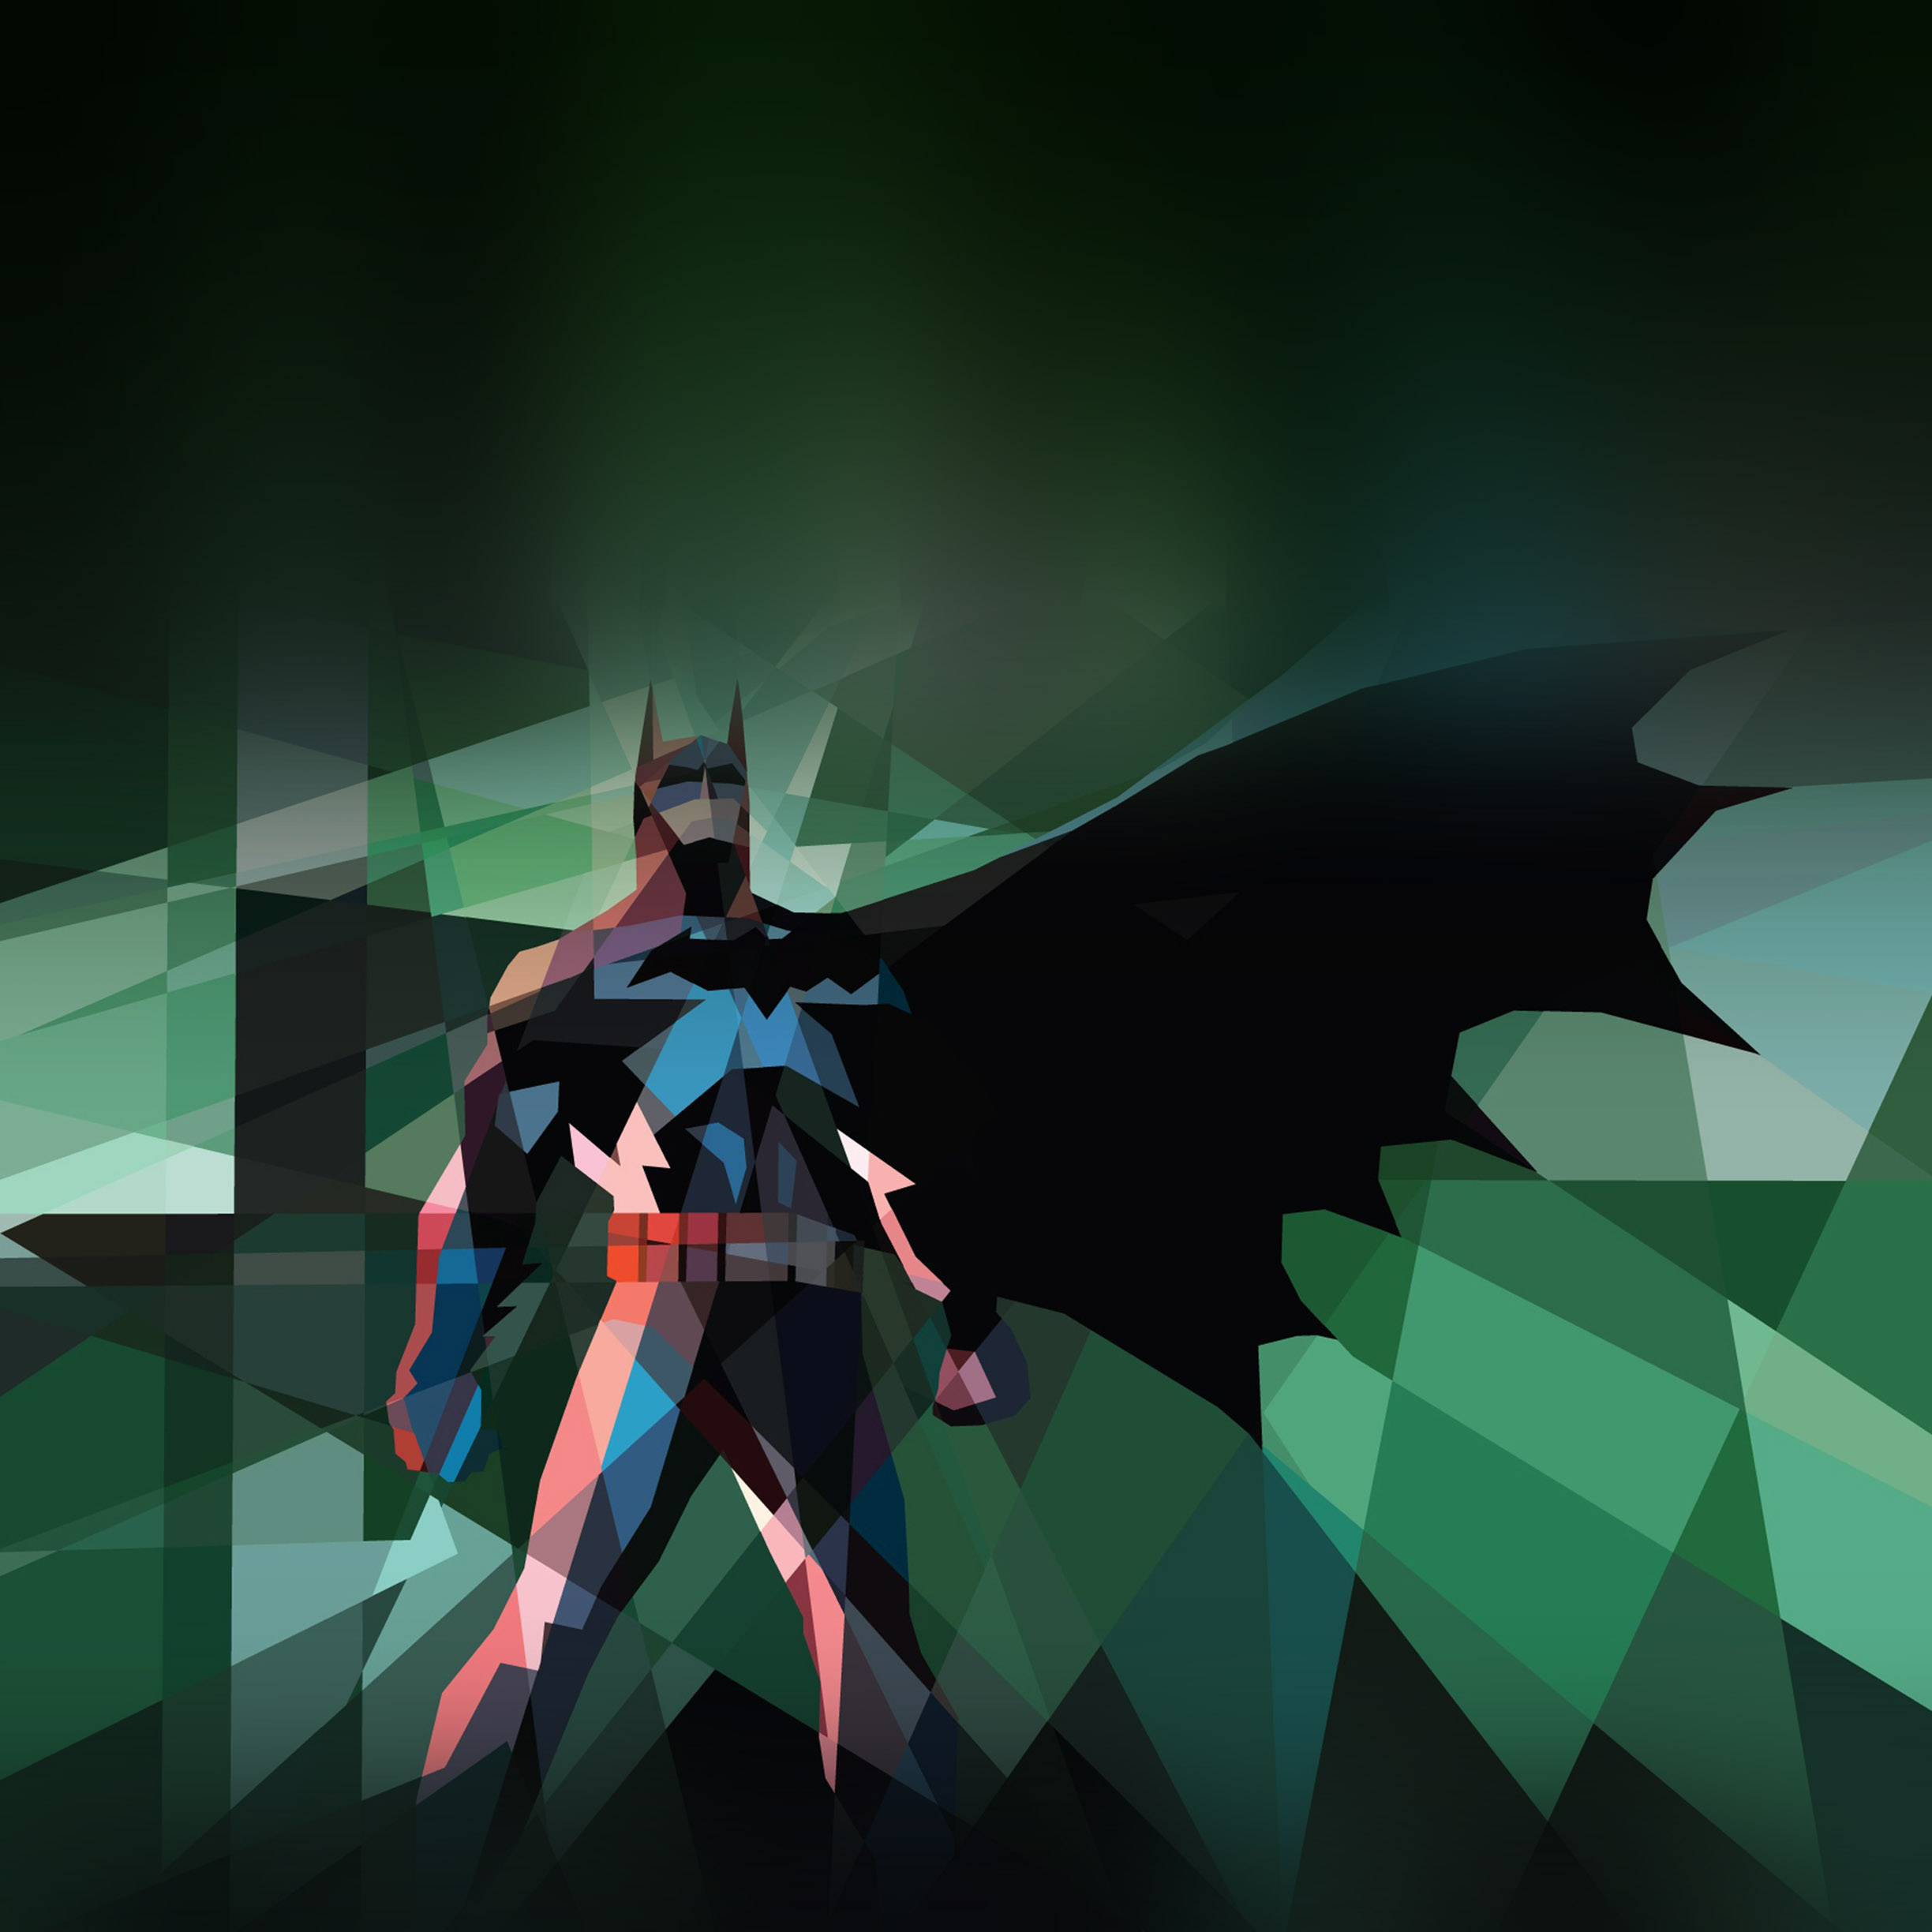 supereroe wallpaper hd,personaggio fittizio,cg artwork,lega della giustizia,batman,supereroe